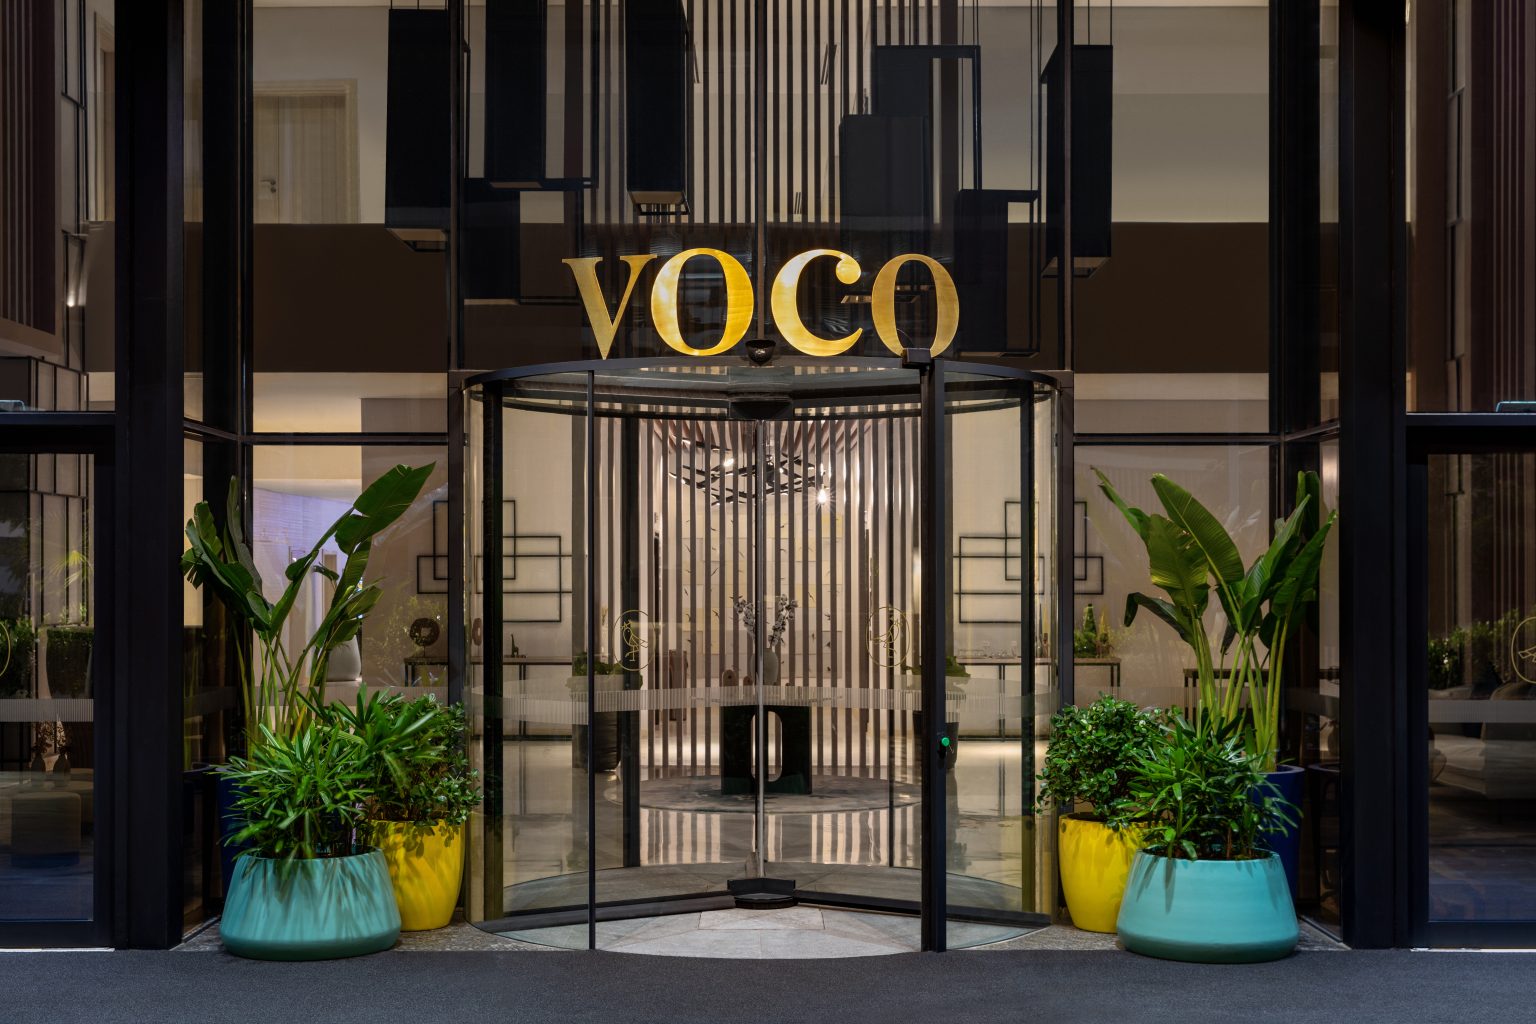 Entrance Voco Dubai The Palm 1536x1024 